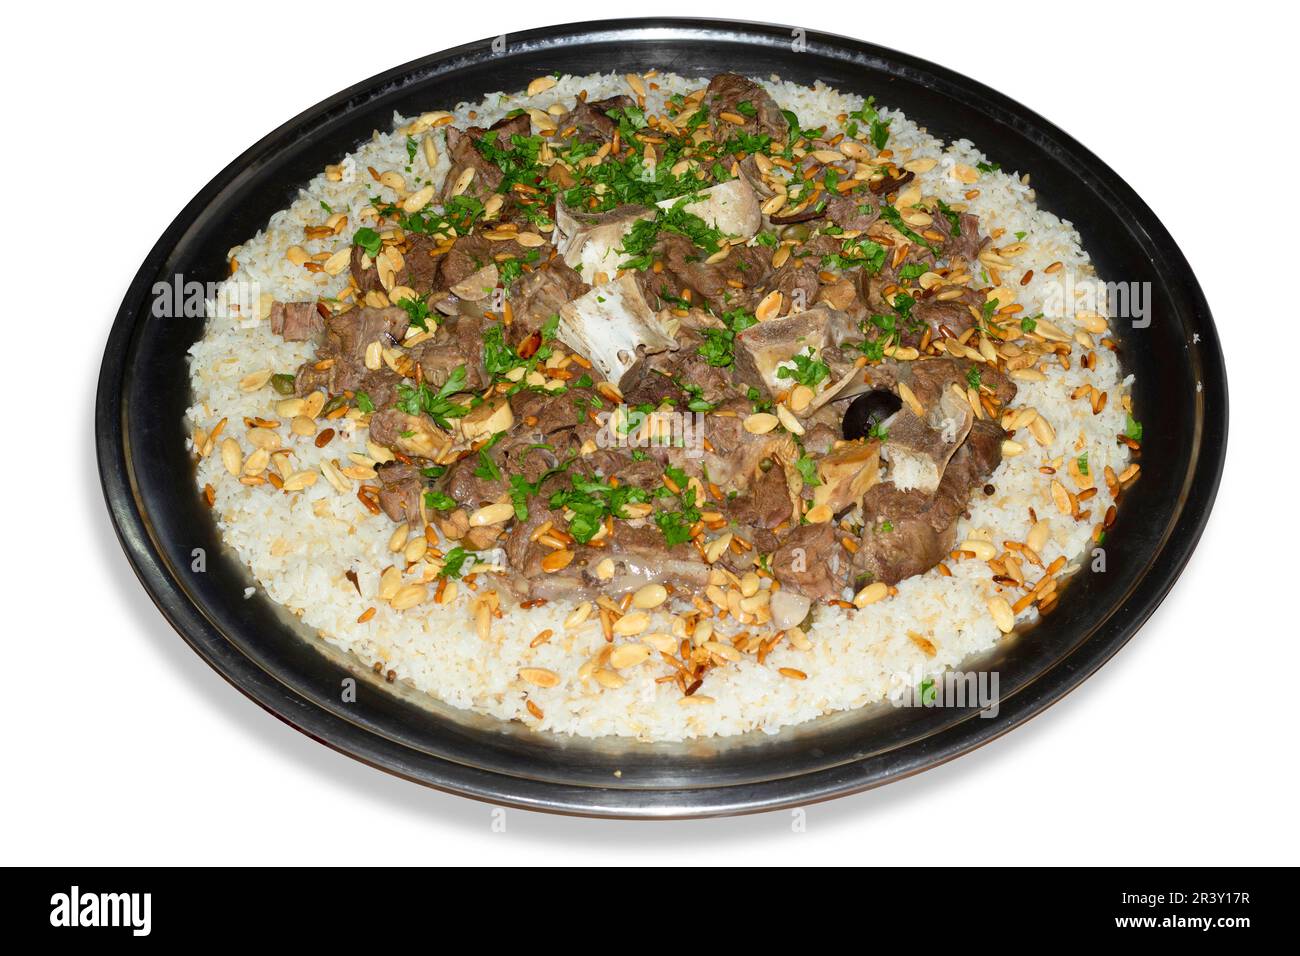 Kamelfleisch mit Reis traditionelles arabisches Essen Hauptrestaurant Mittagessen serviert mit Mandeln und Kiefernsamen. Stockfoto